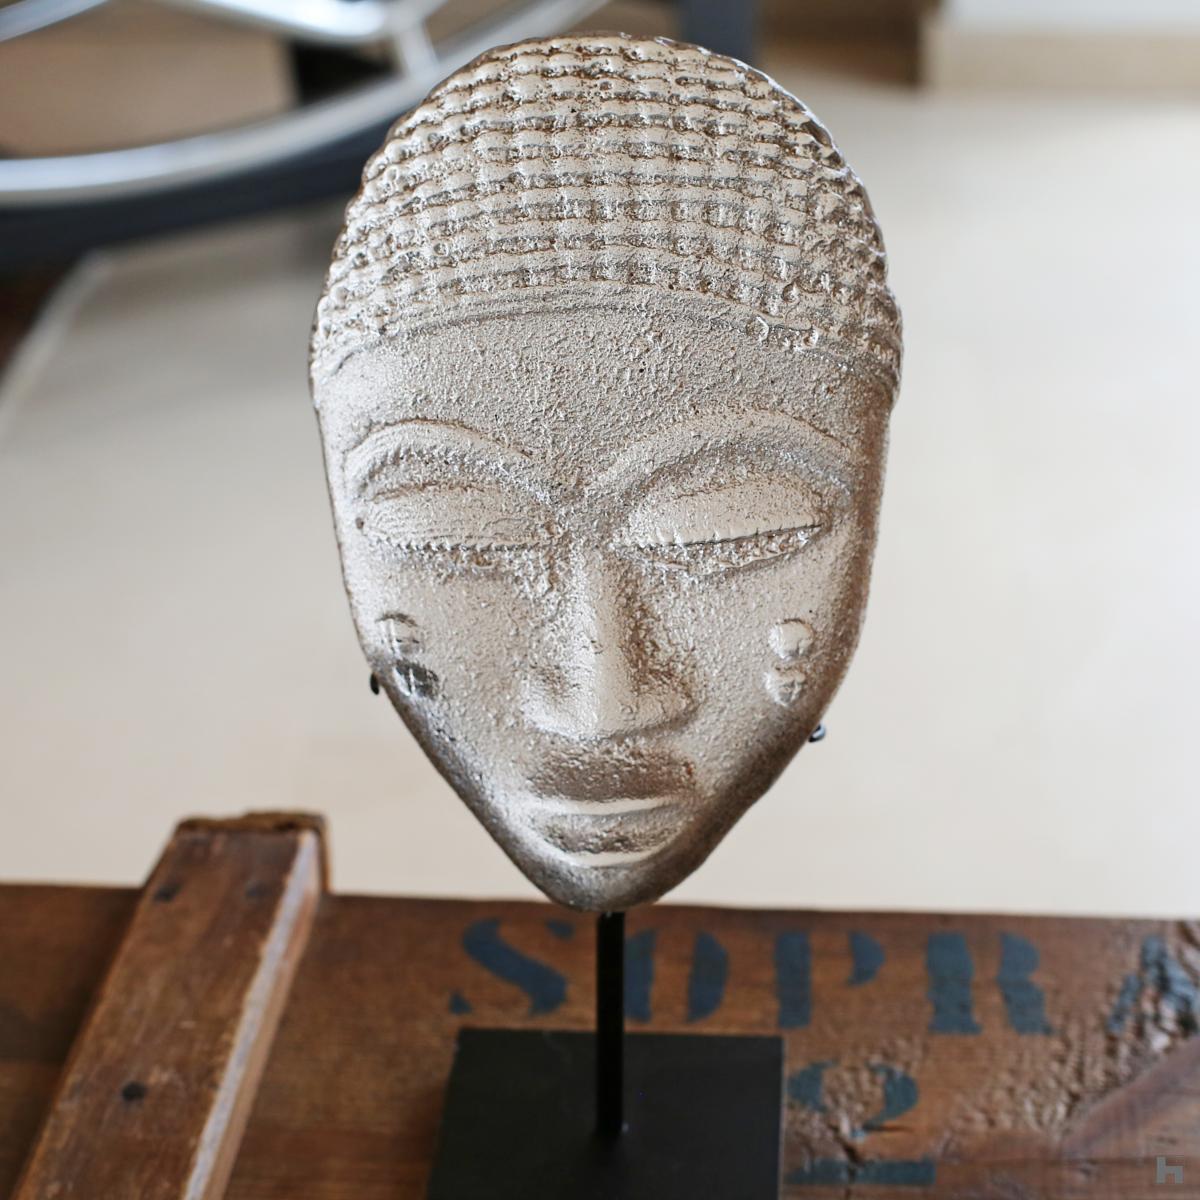 Bini Edo mask in cast glass